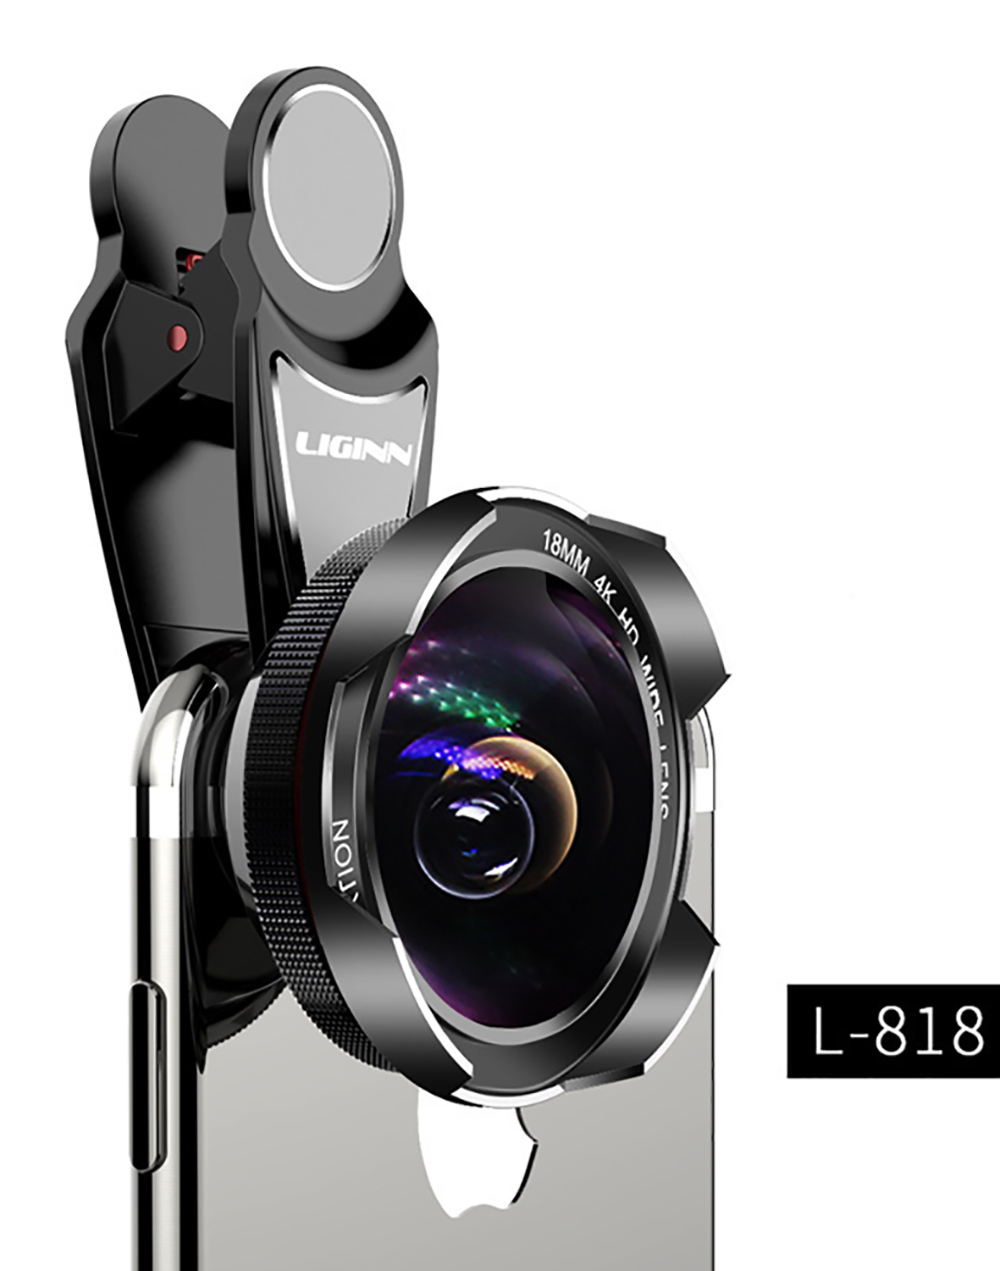 mobile phone camera lens LIGINN L 818%20(3)